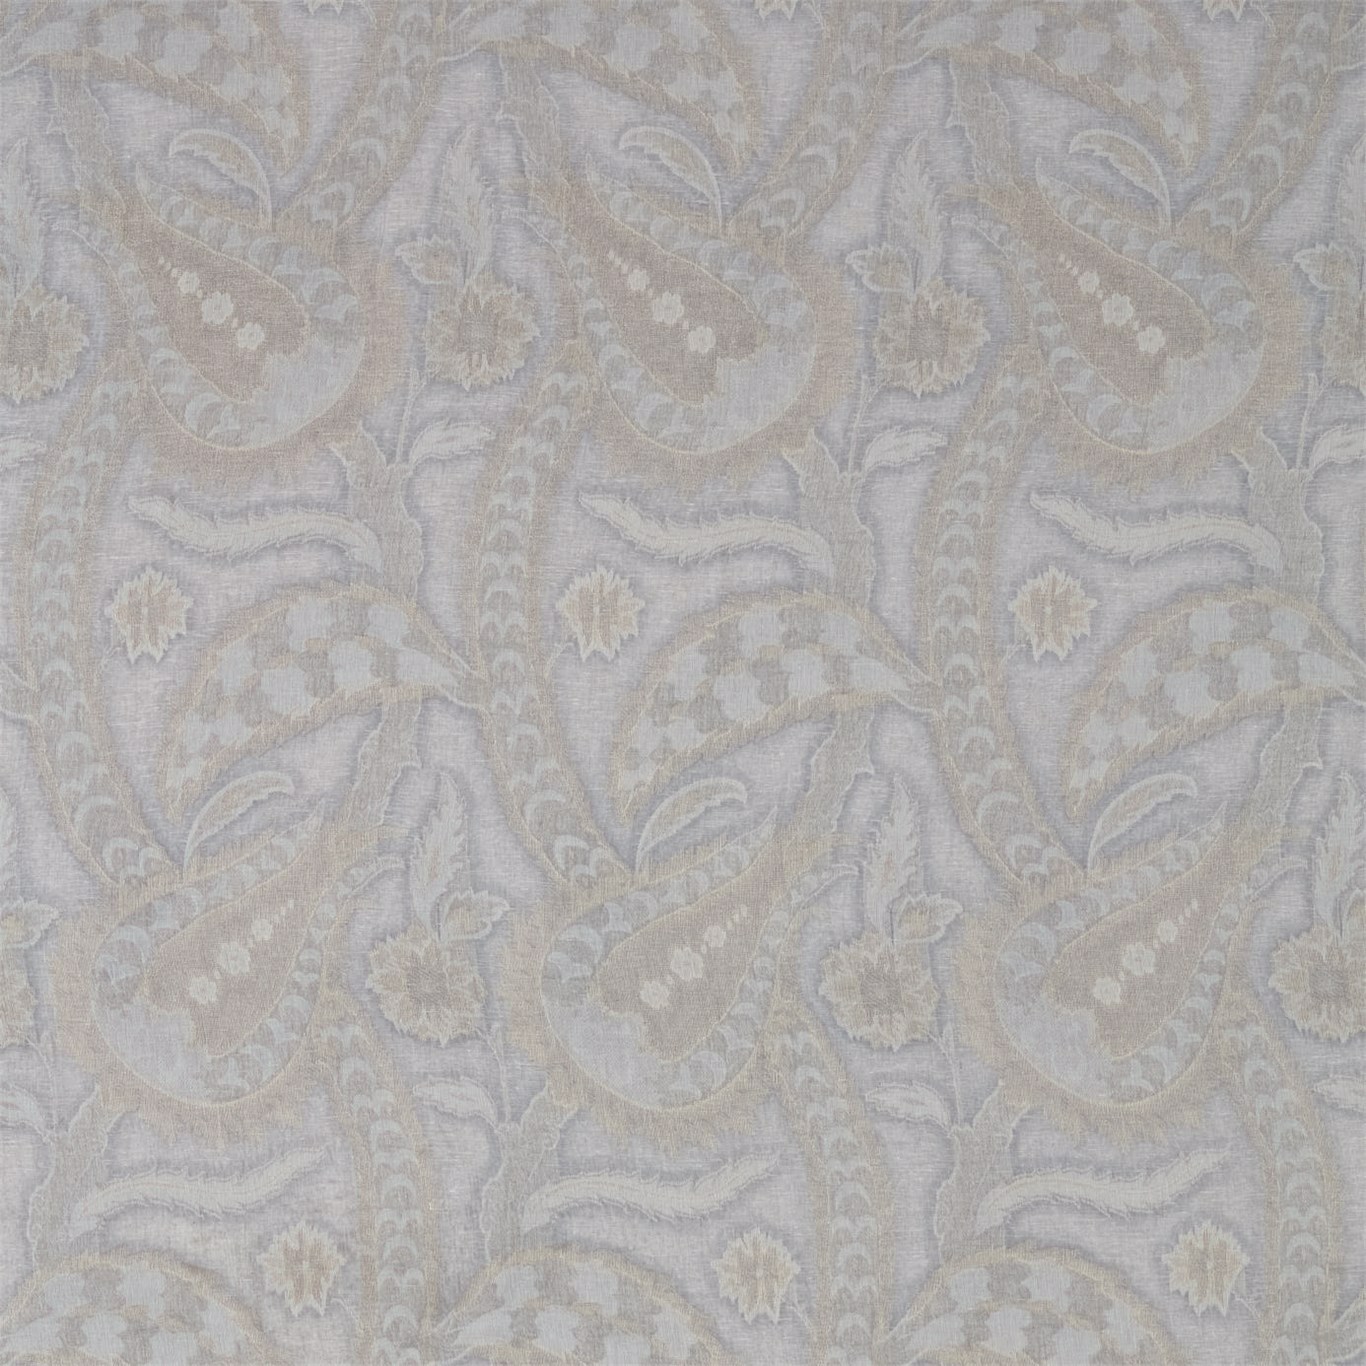 Oberon Zinc Fabric by ZOF